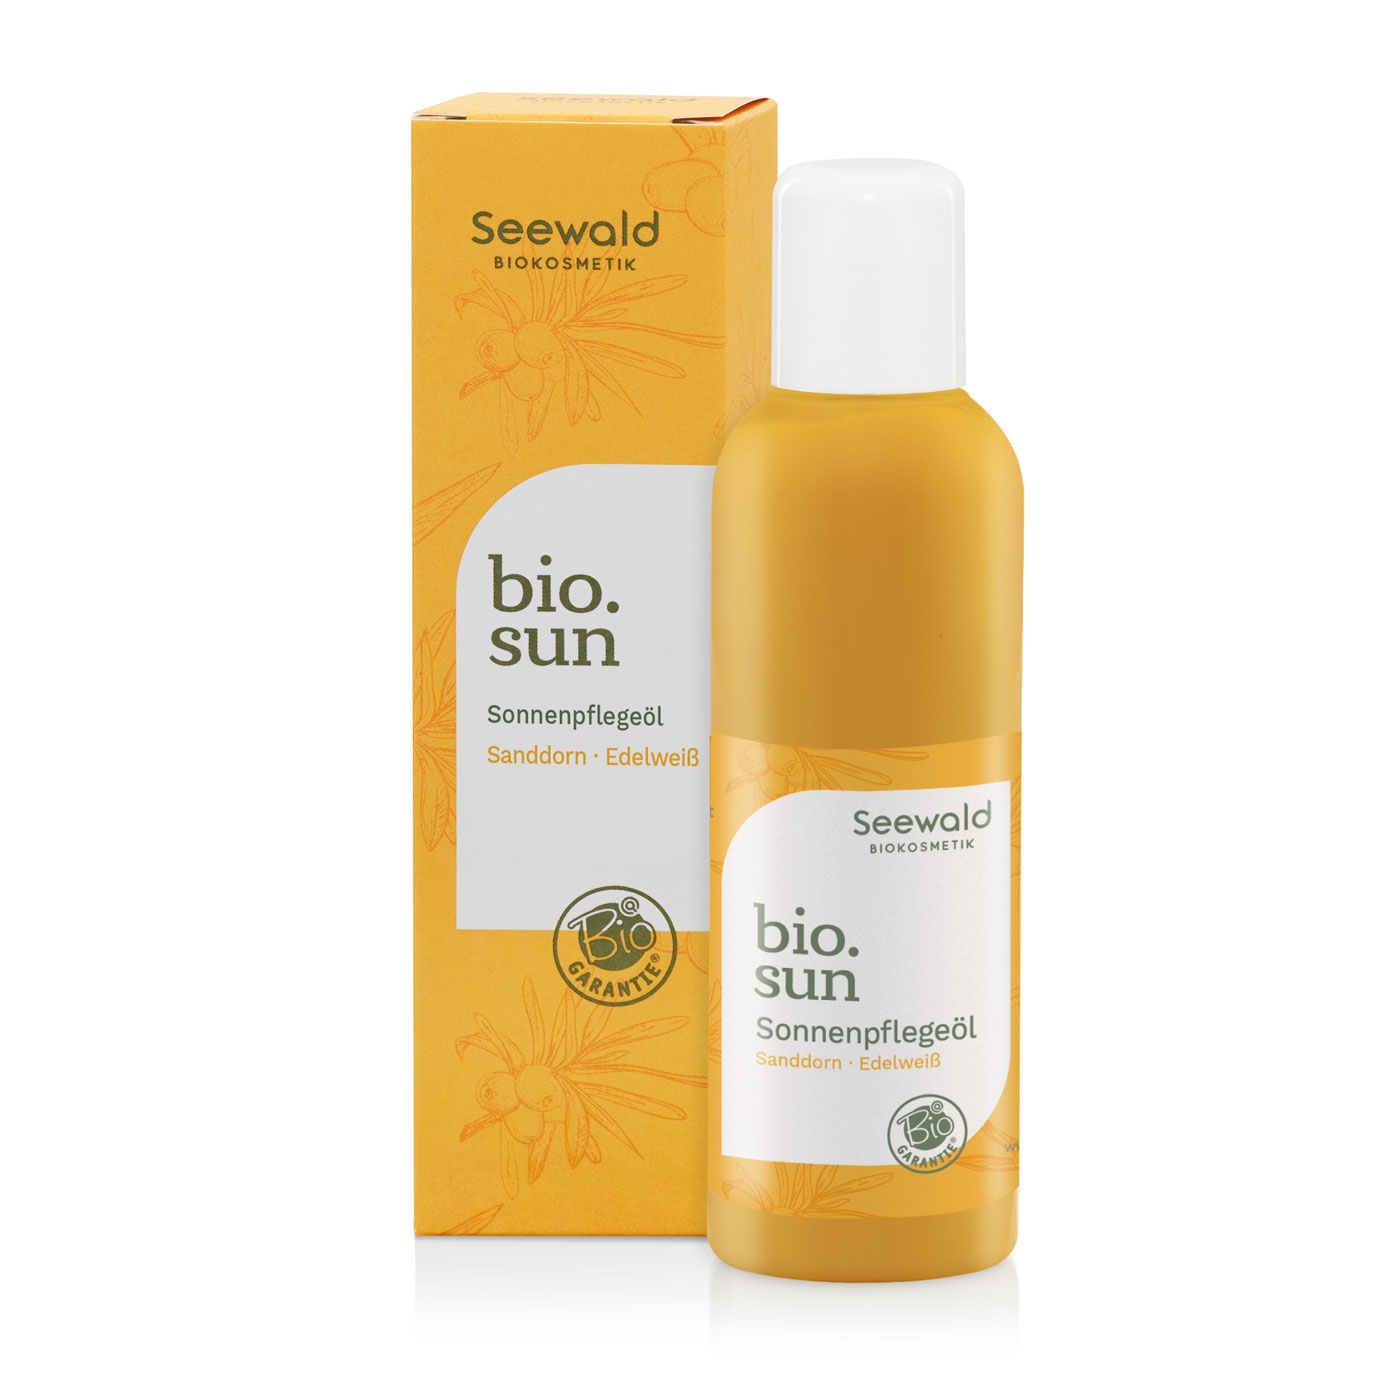 bio.sun Sonnenpflegeöl - 150 ml 150 ml